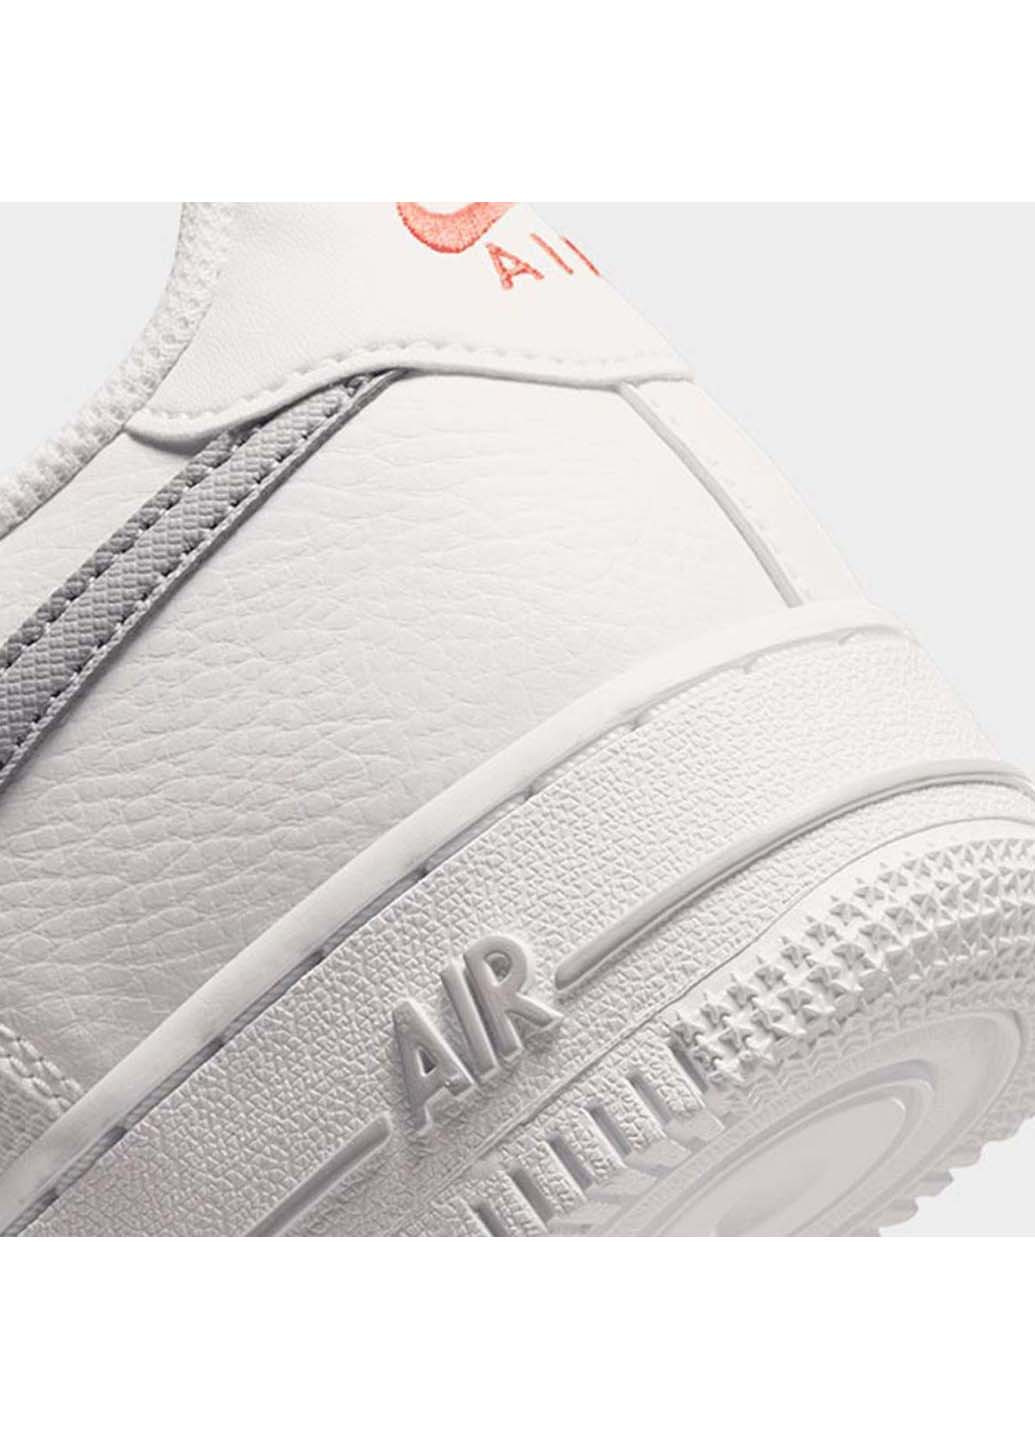 Белые демисезонные кроссовки air force 1 low gs Nike